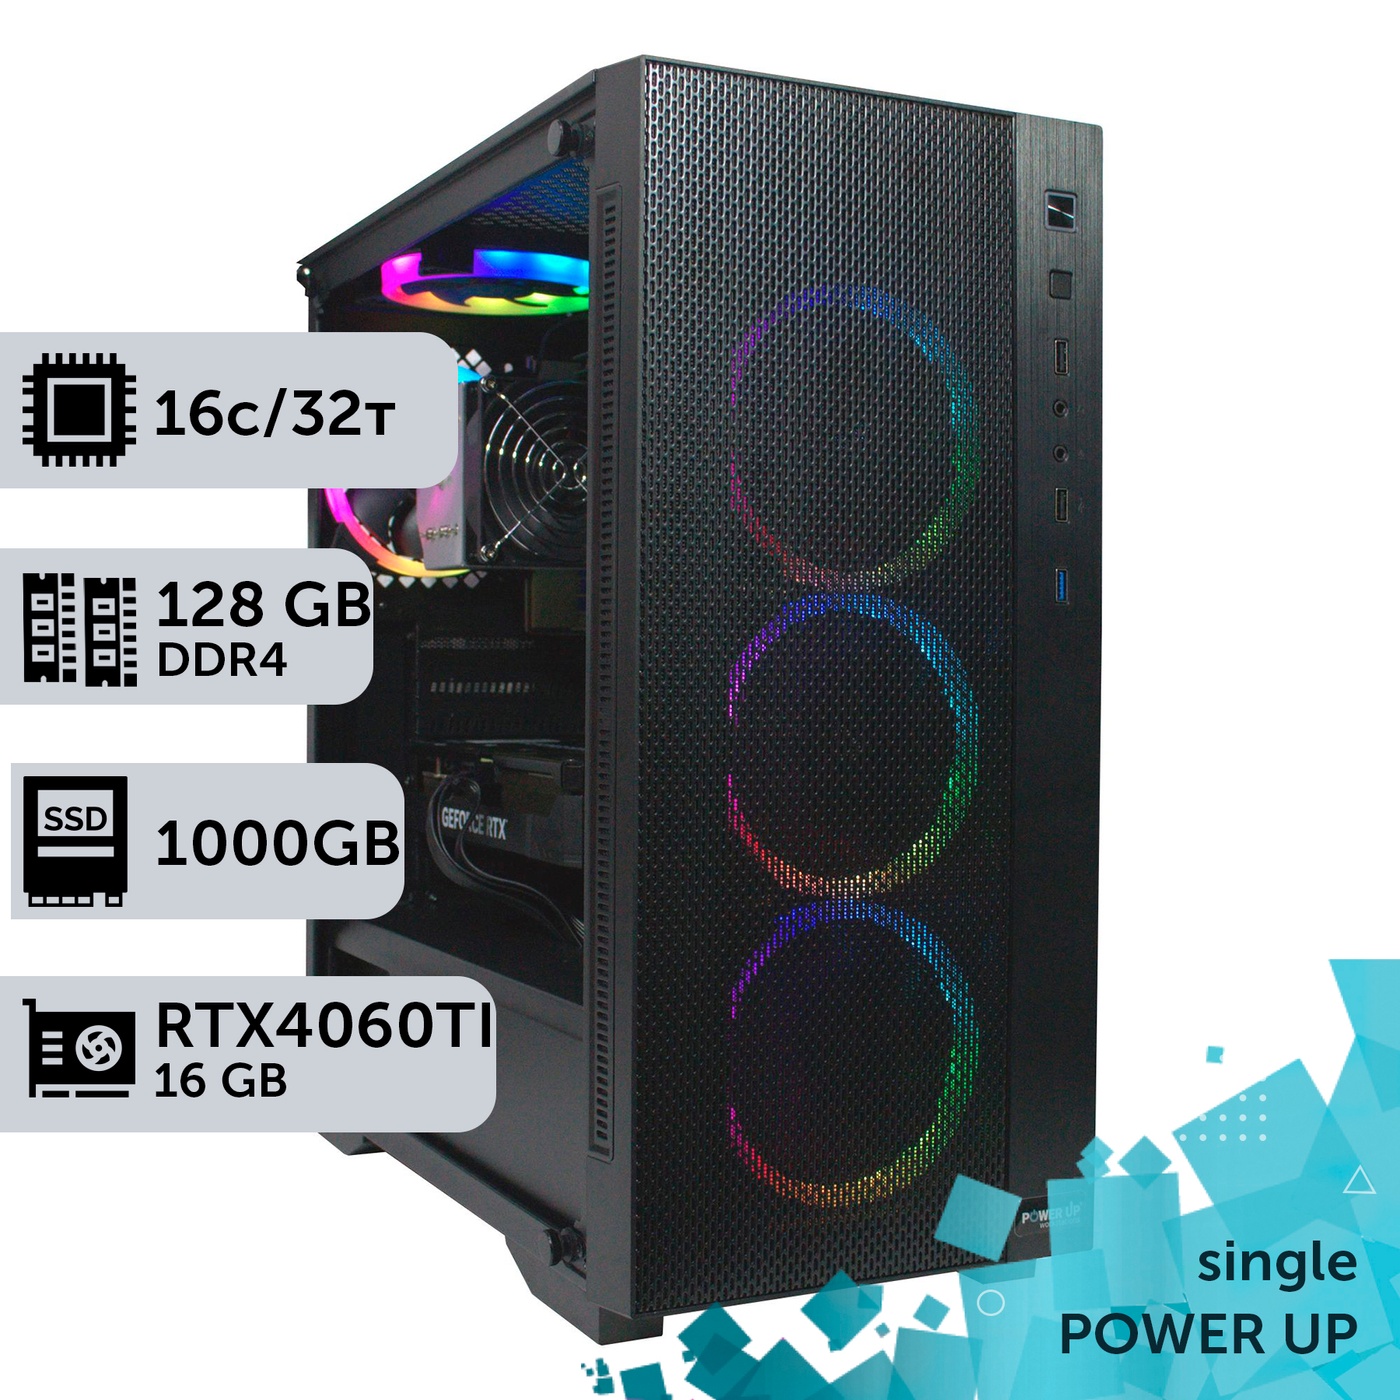 Робоча станція PowerUp #285 AMD EPYC 7F52/128 GB/SSD 1TB/GeForce RTX 4060Ti 16GB